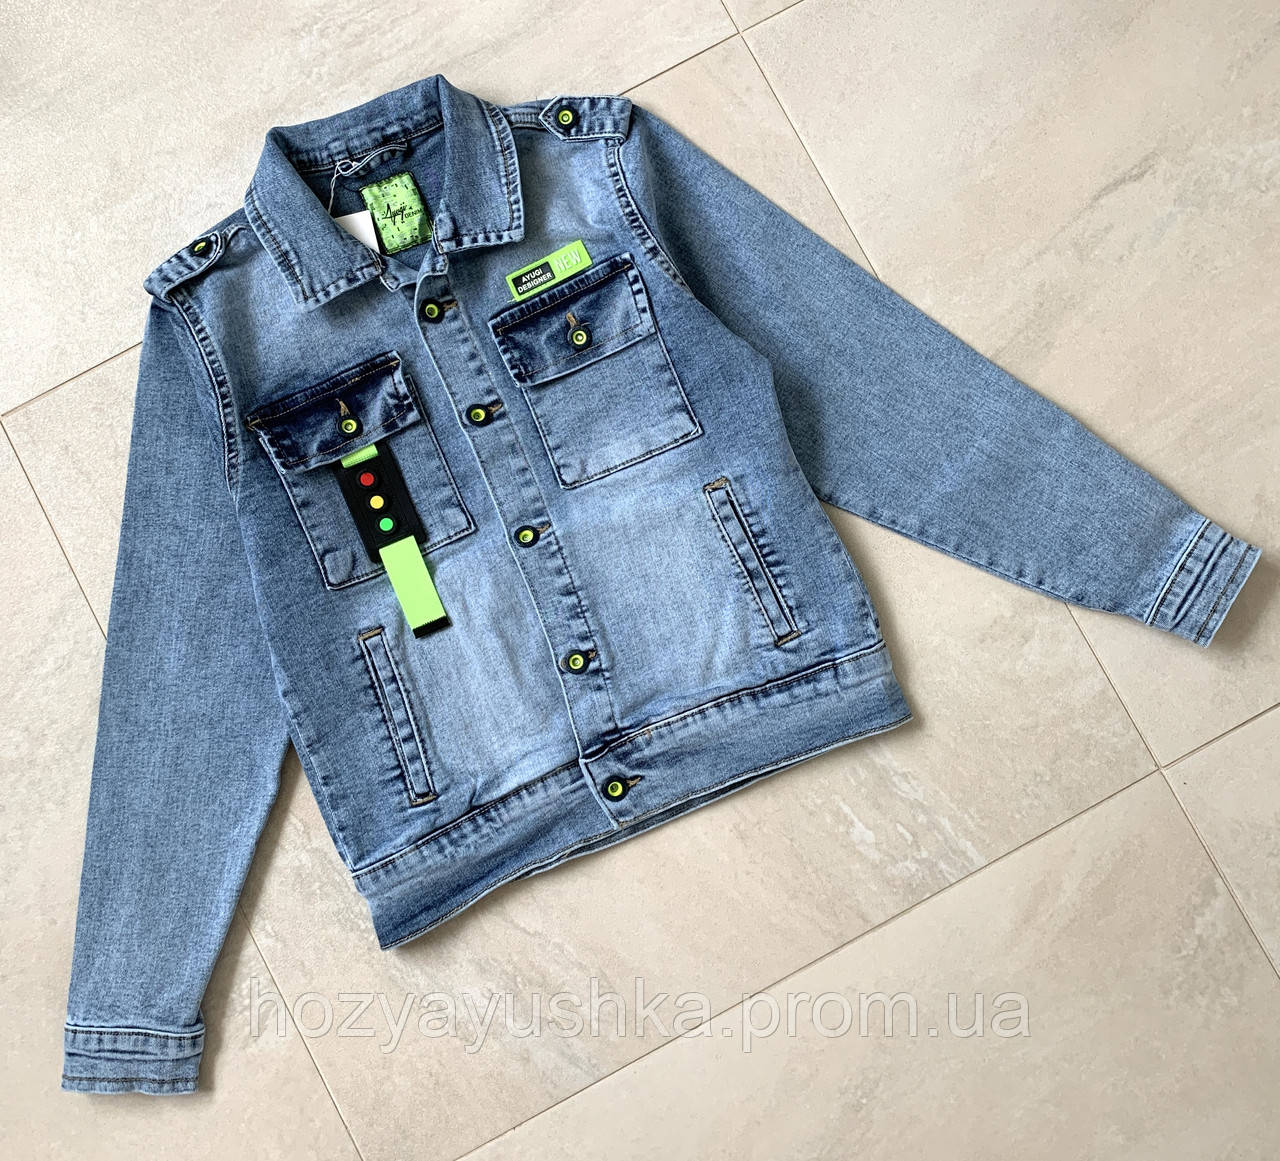 

Джинсовый пиджак на мальчика 146-170